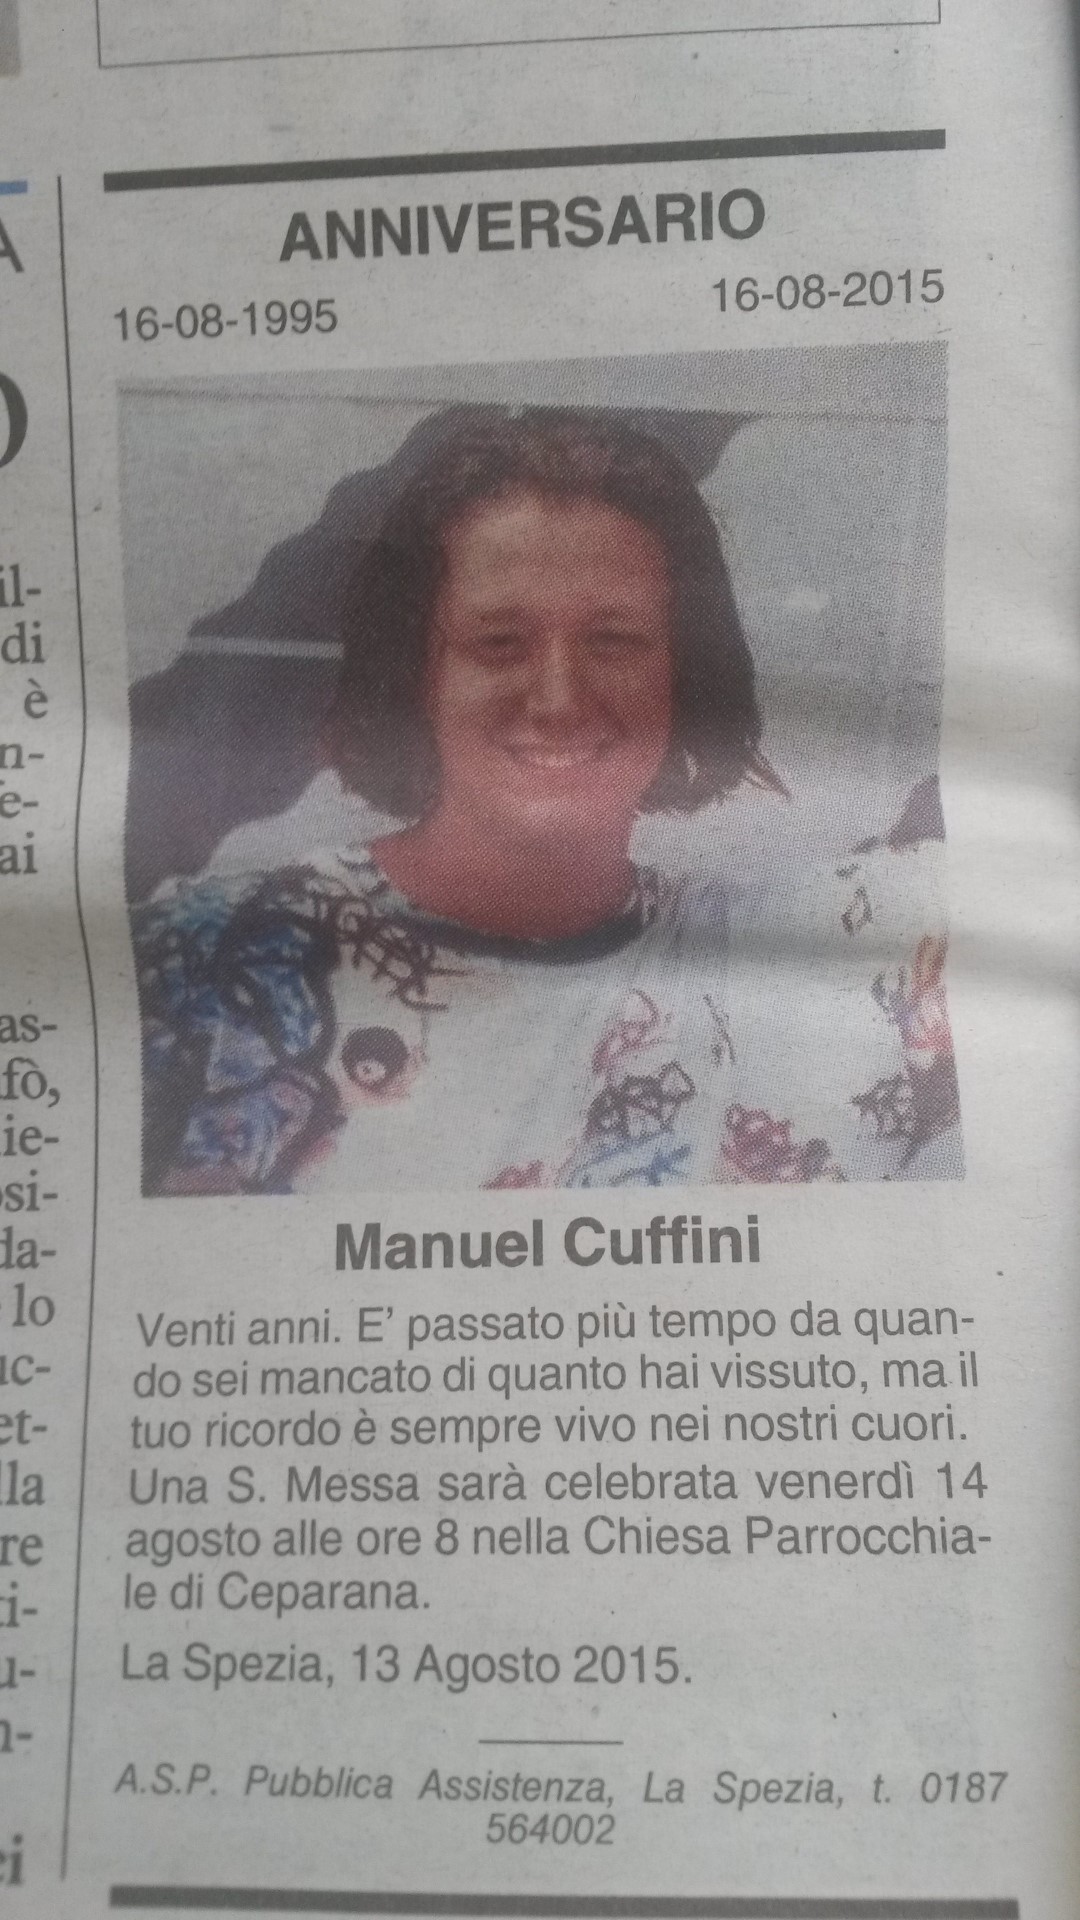 Manuel Cuffini 16-08-1995 16-08-2015